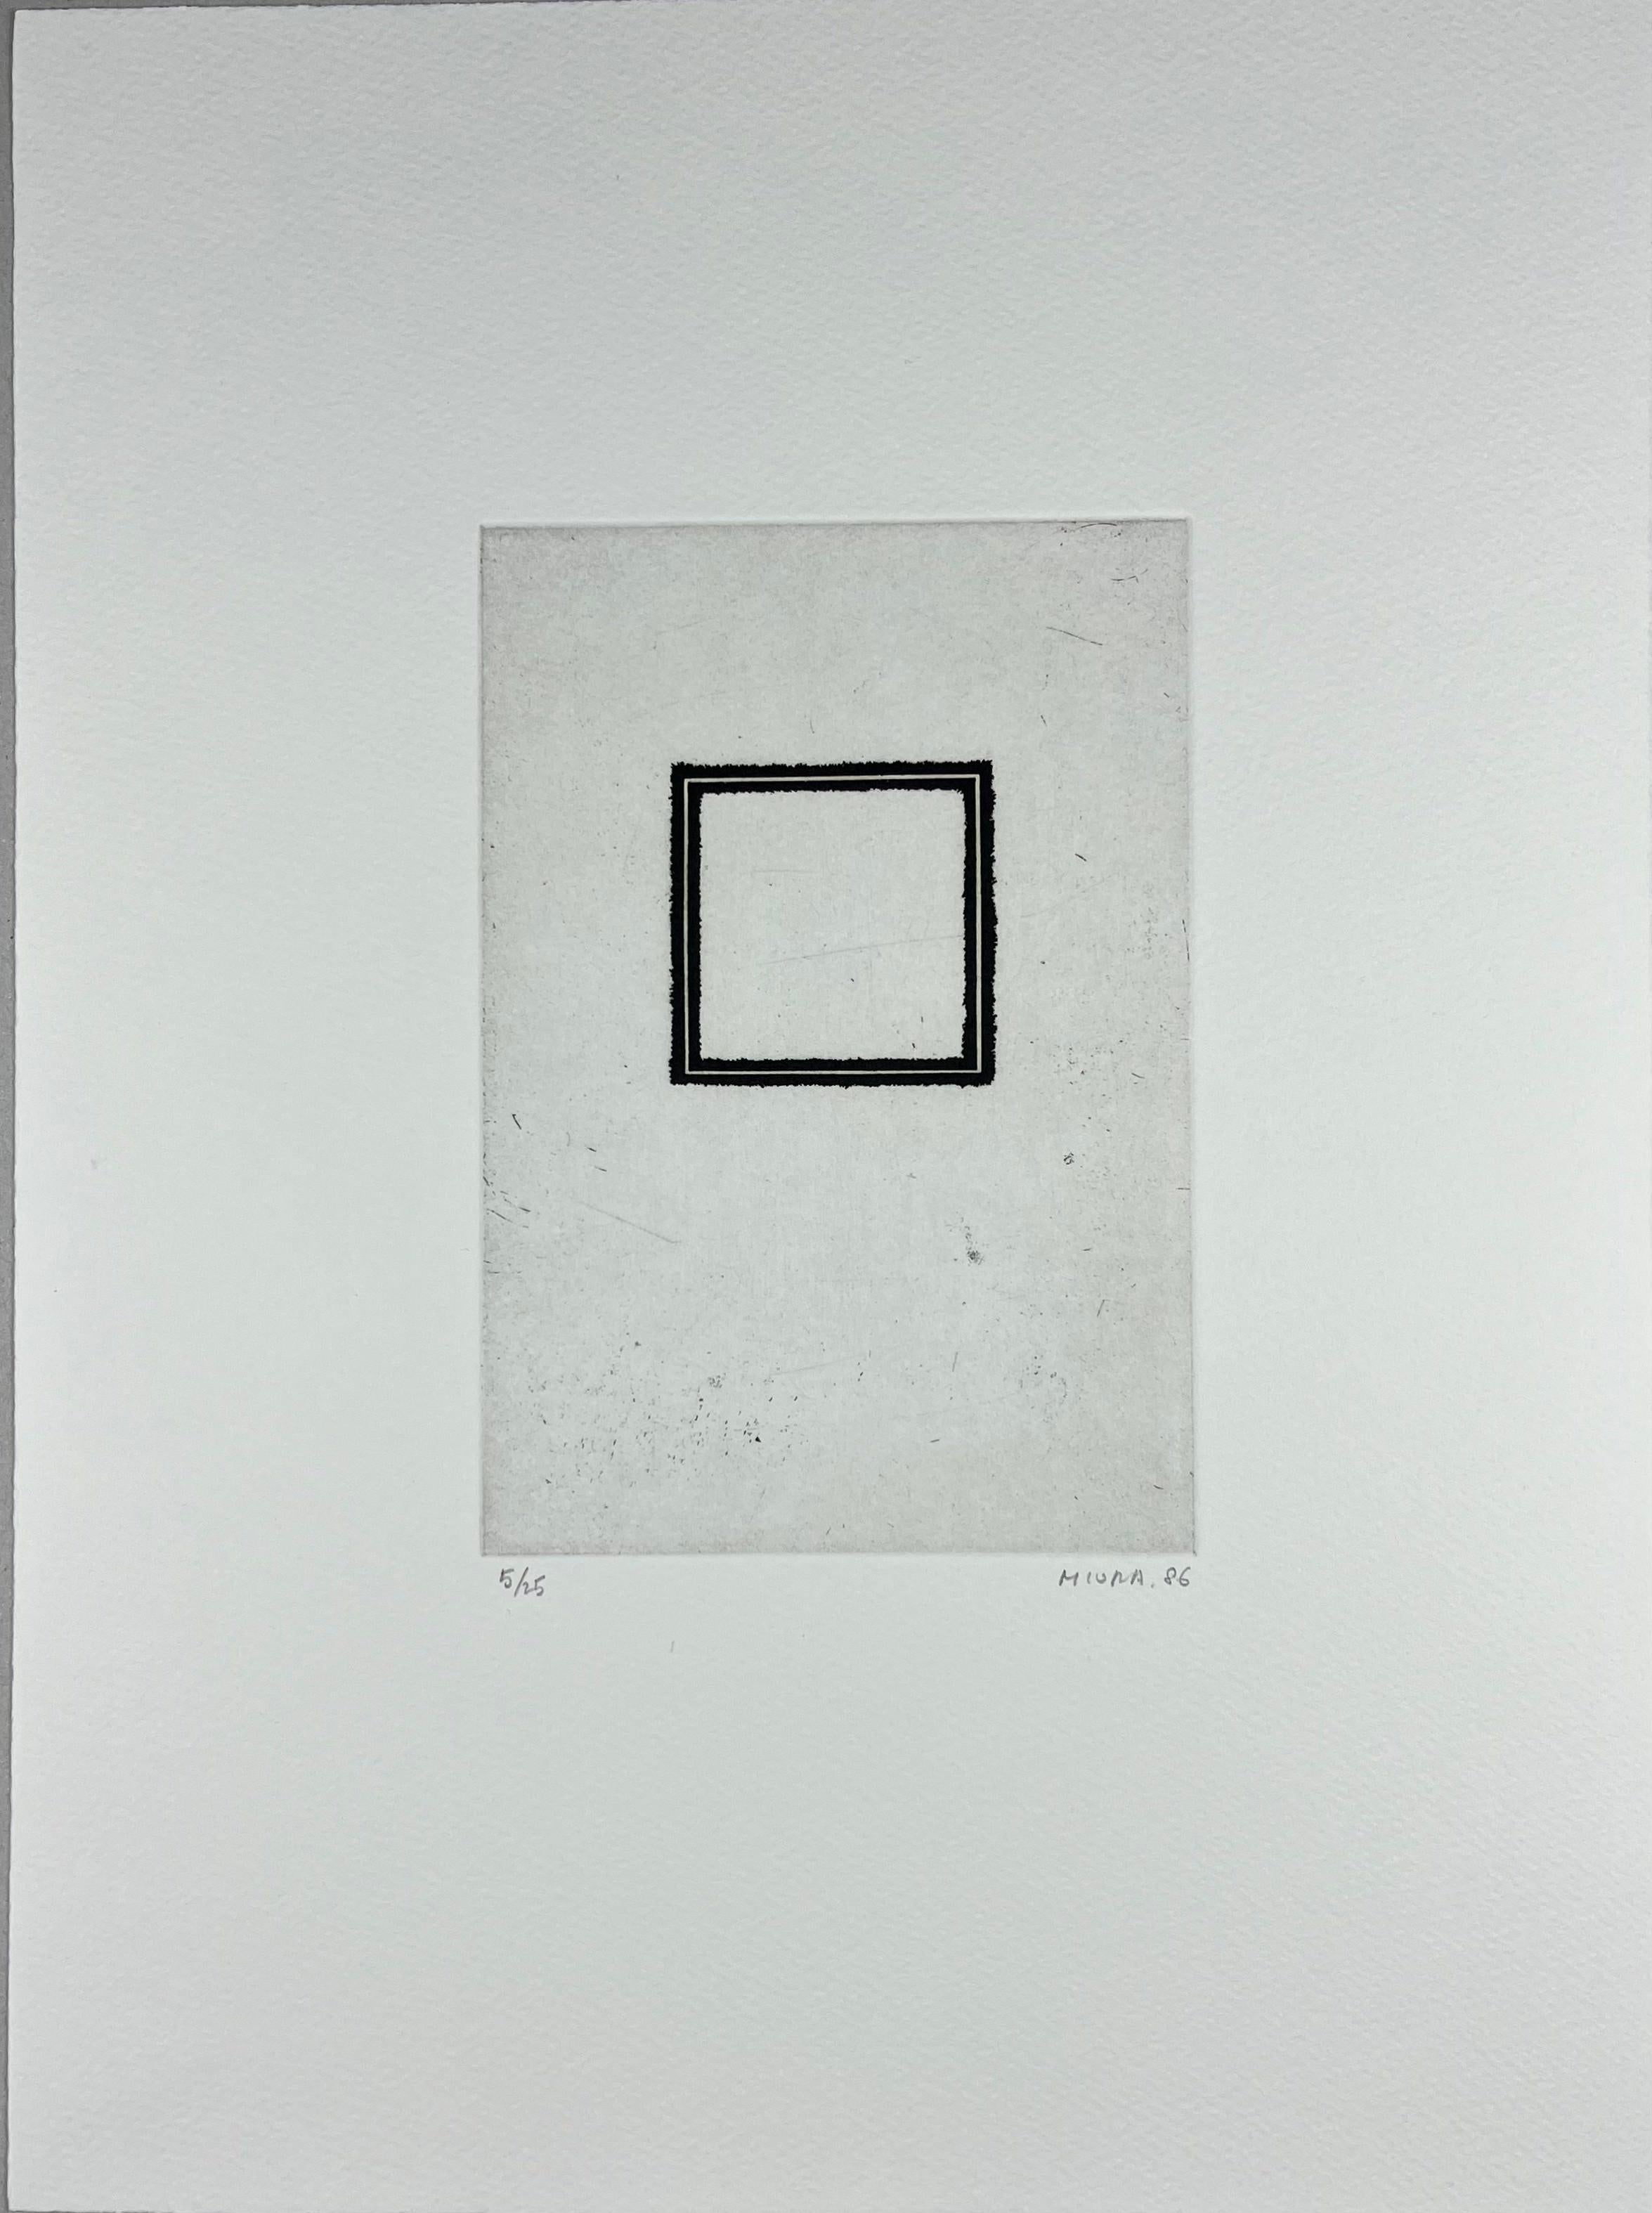 Mitsuo Miura Abstract Print – Japanisch 1986 signiert limitierte Auflage Original-Kunstdruck Radierung  15x11 Zoll.